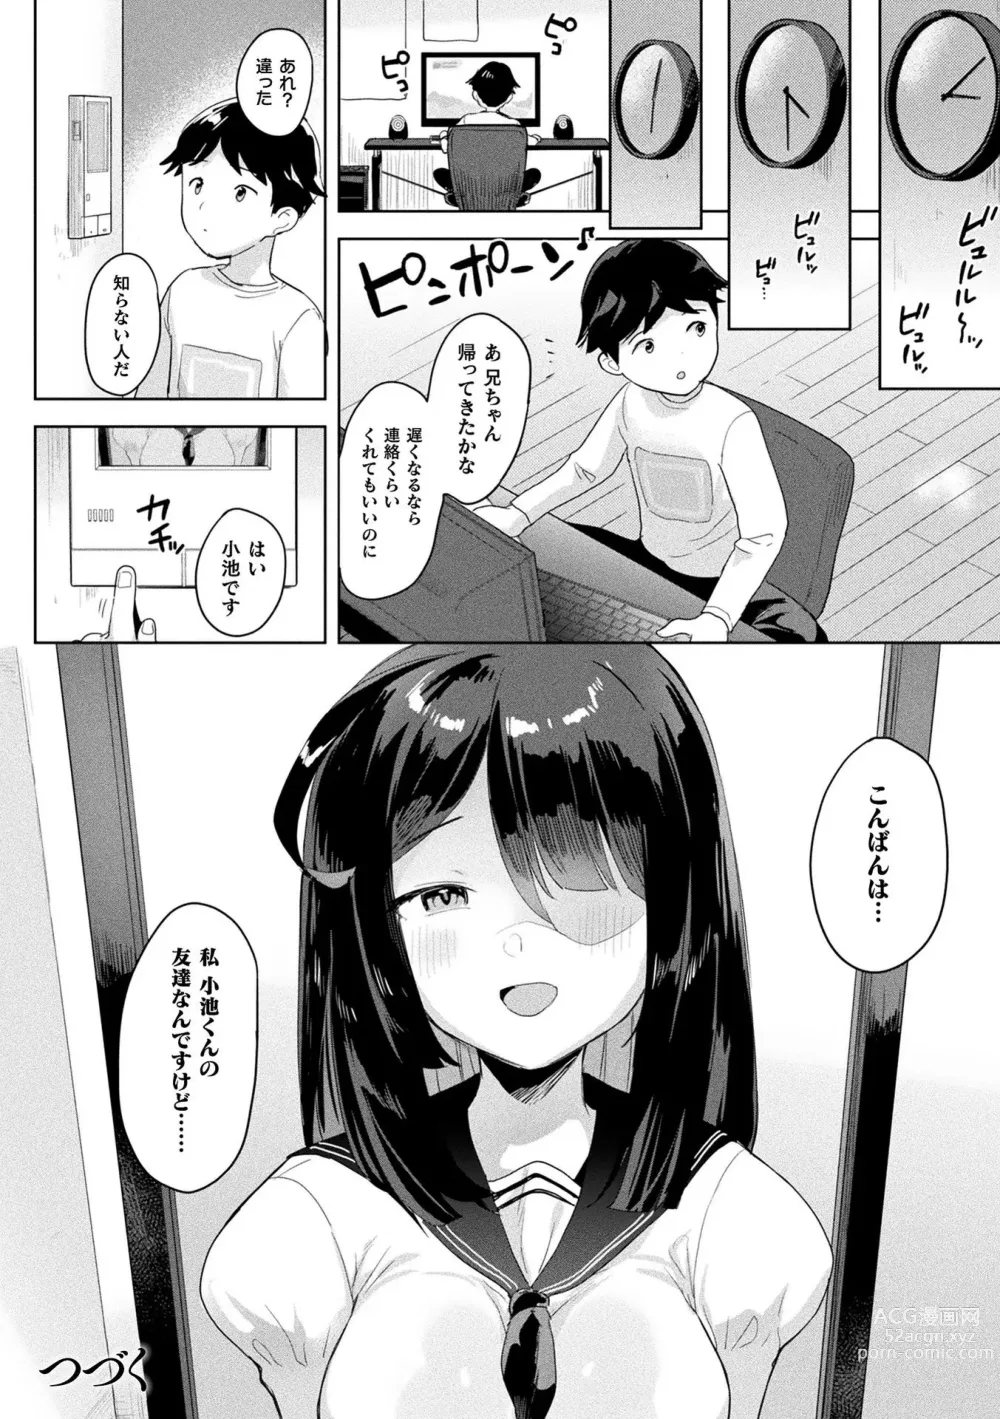 Page 28 of manga Neneki Shoujo -Anata o Tabetai-